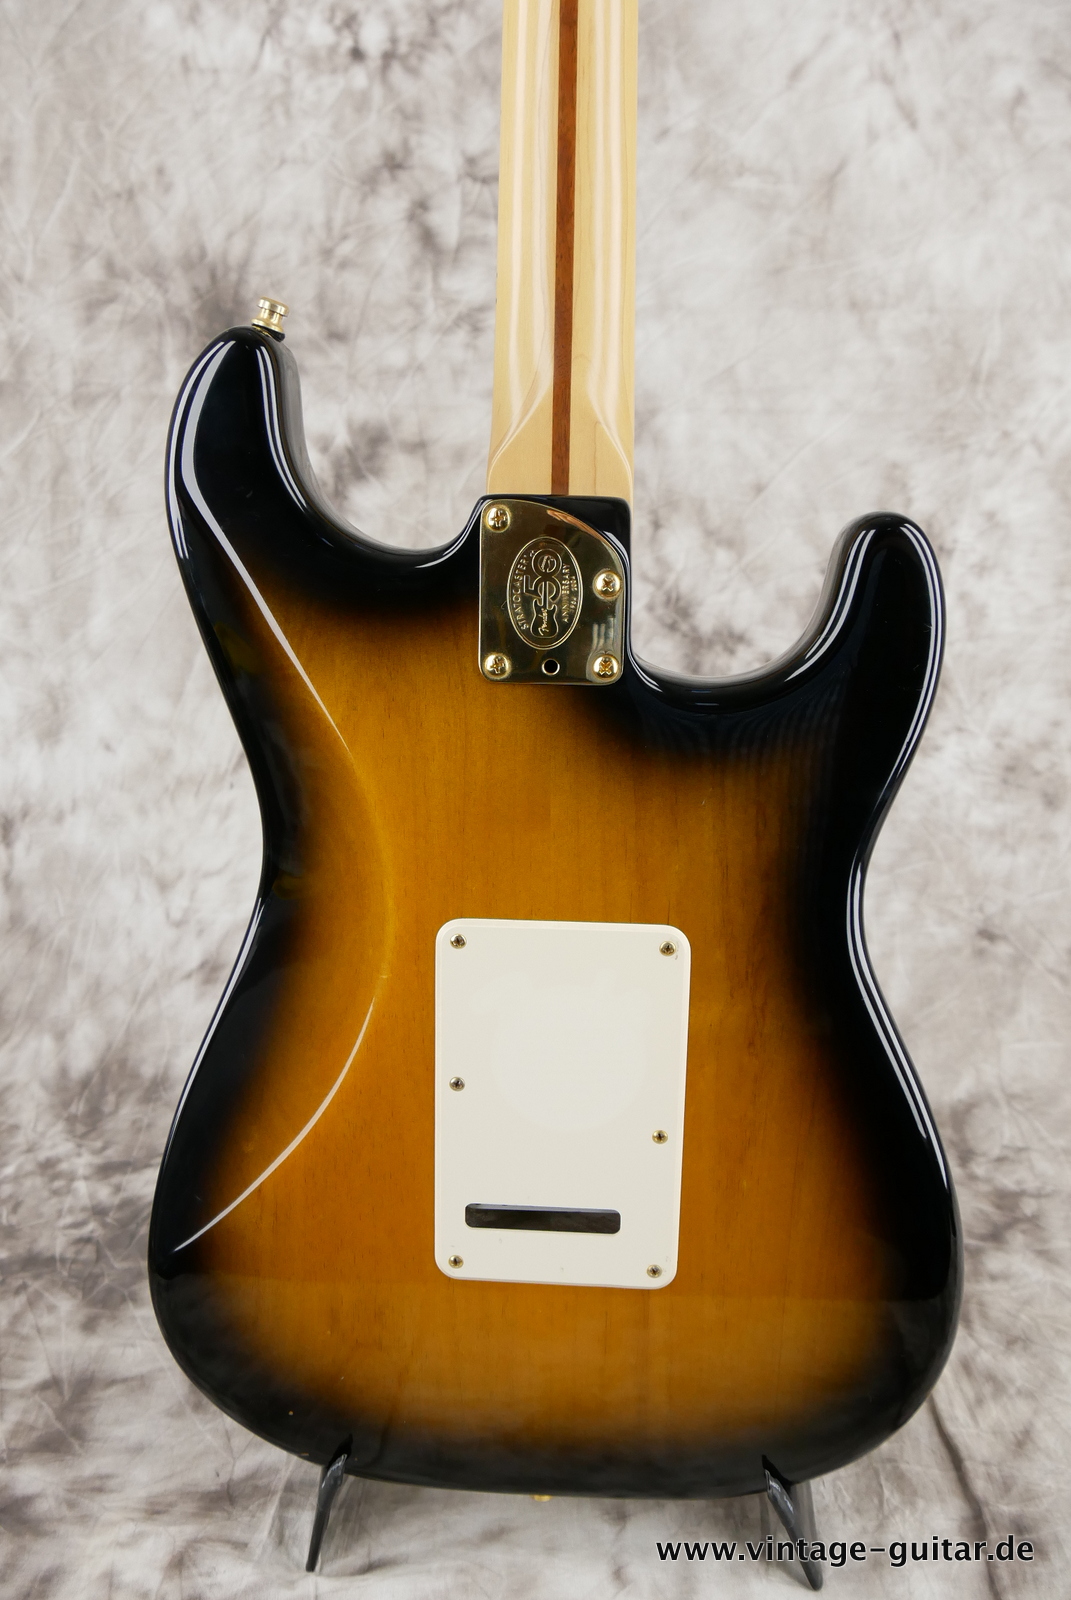 Fender_Stratocaster_deluxe_50th_anniversary__left_hand_sunburst_tweed_case_2004-008.JPG